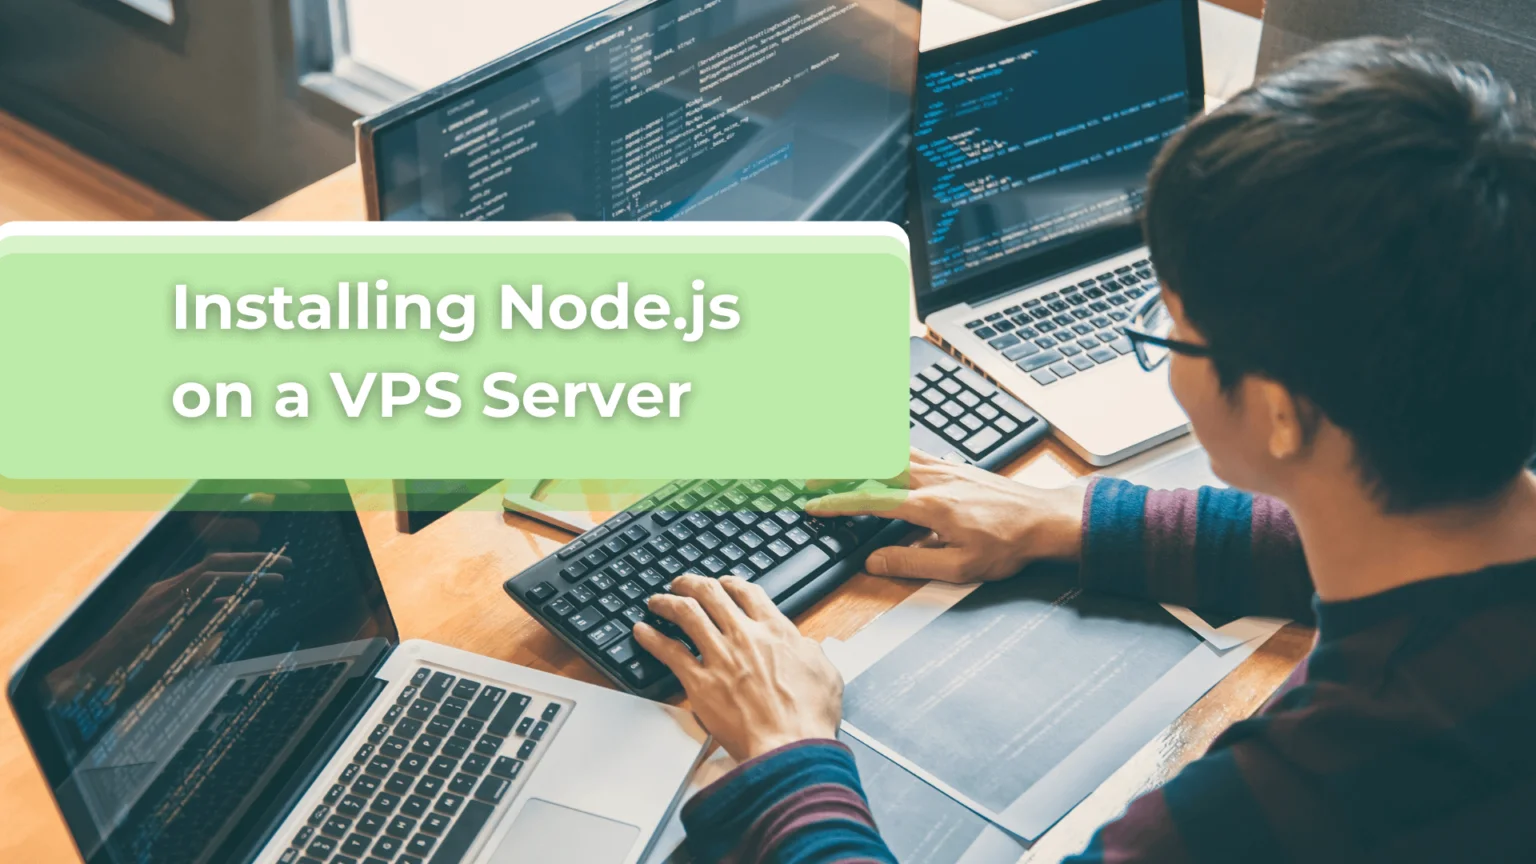 Installing-Node.js-on-a-VPS-Server-1536x864.png